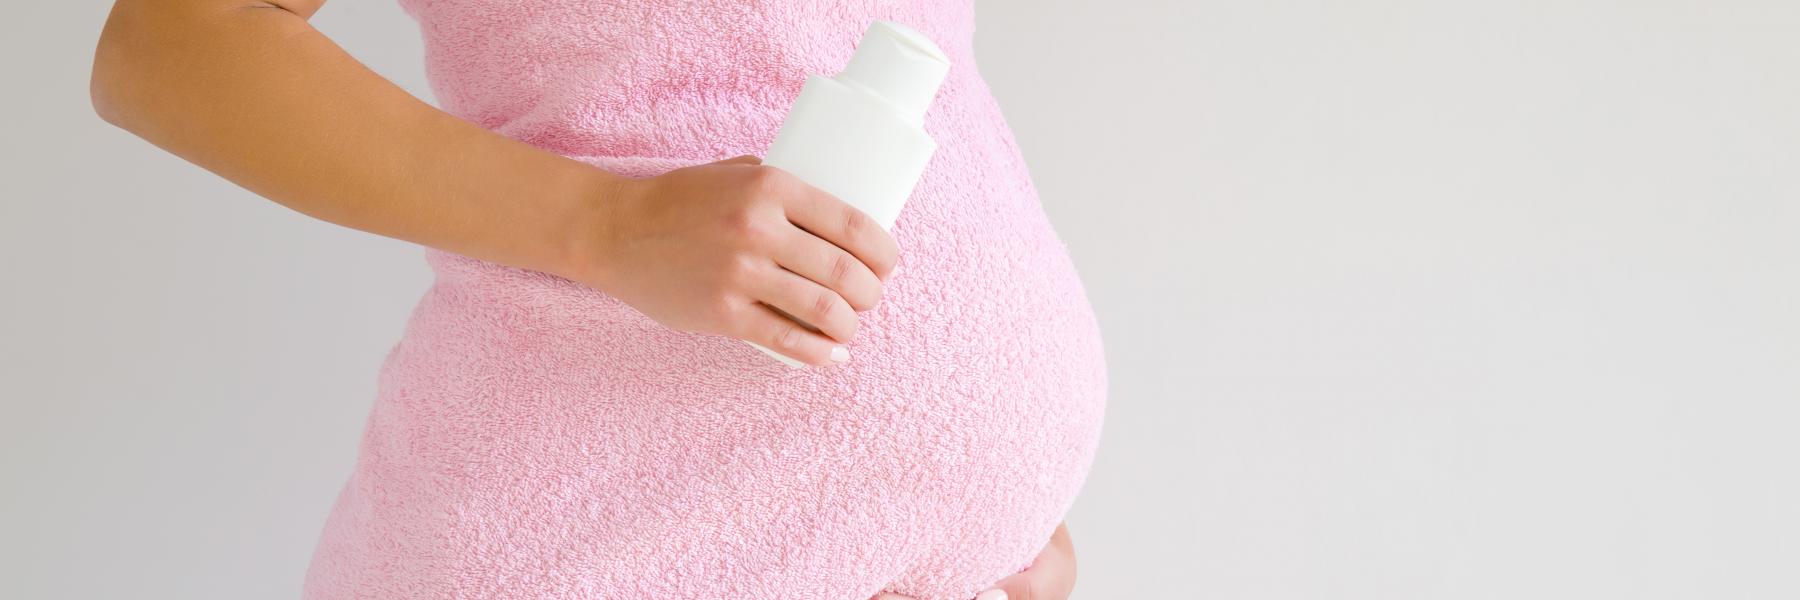 جفاف البشرة للحامل: الأسباب، طرق العلاج